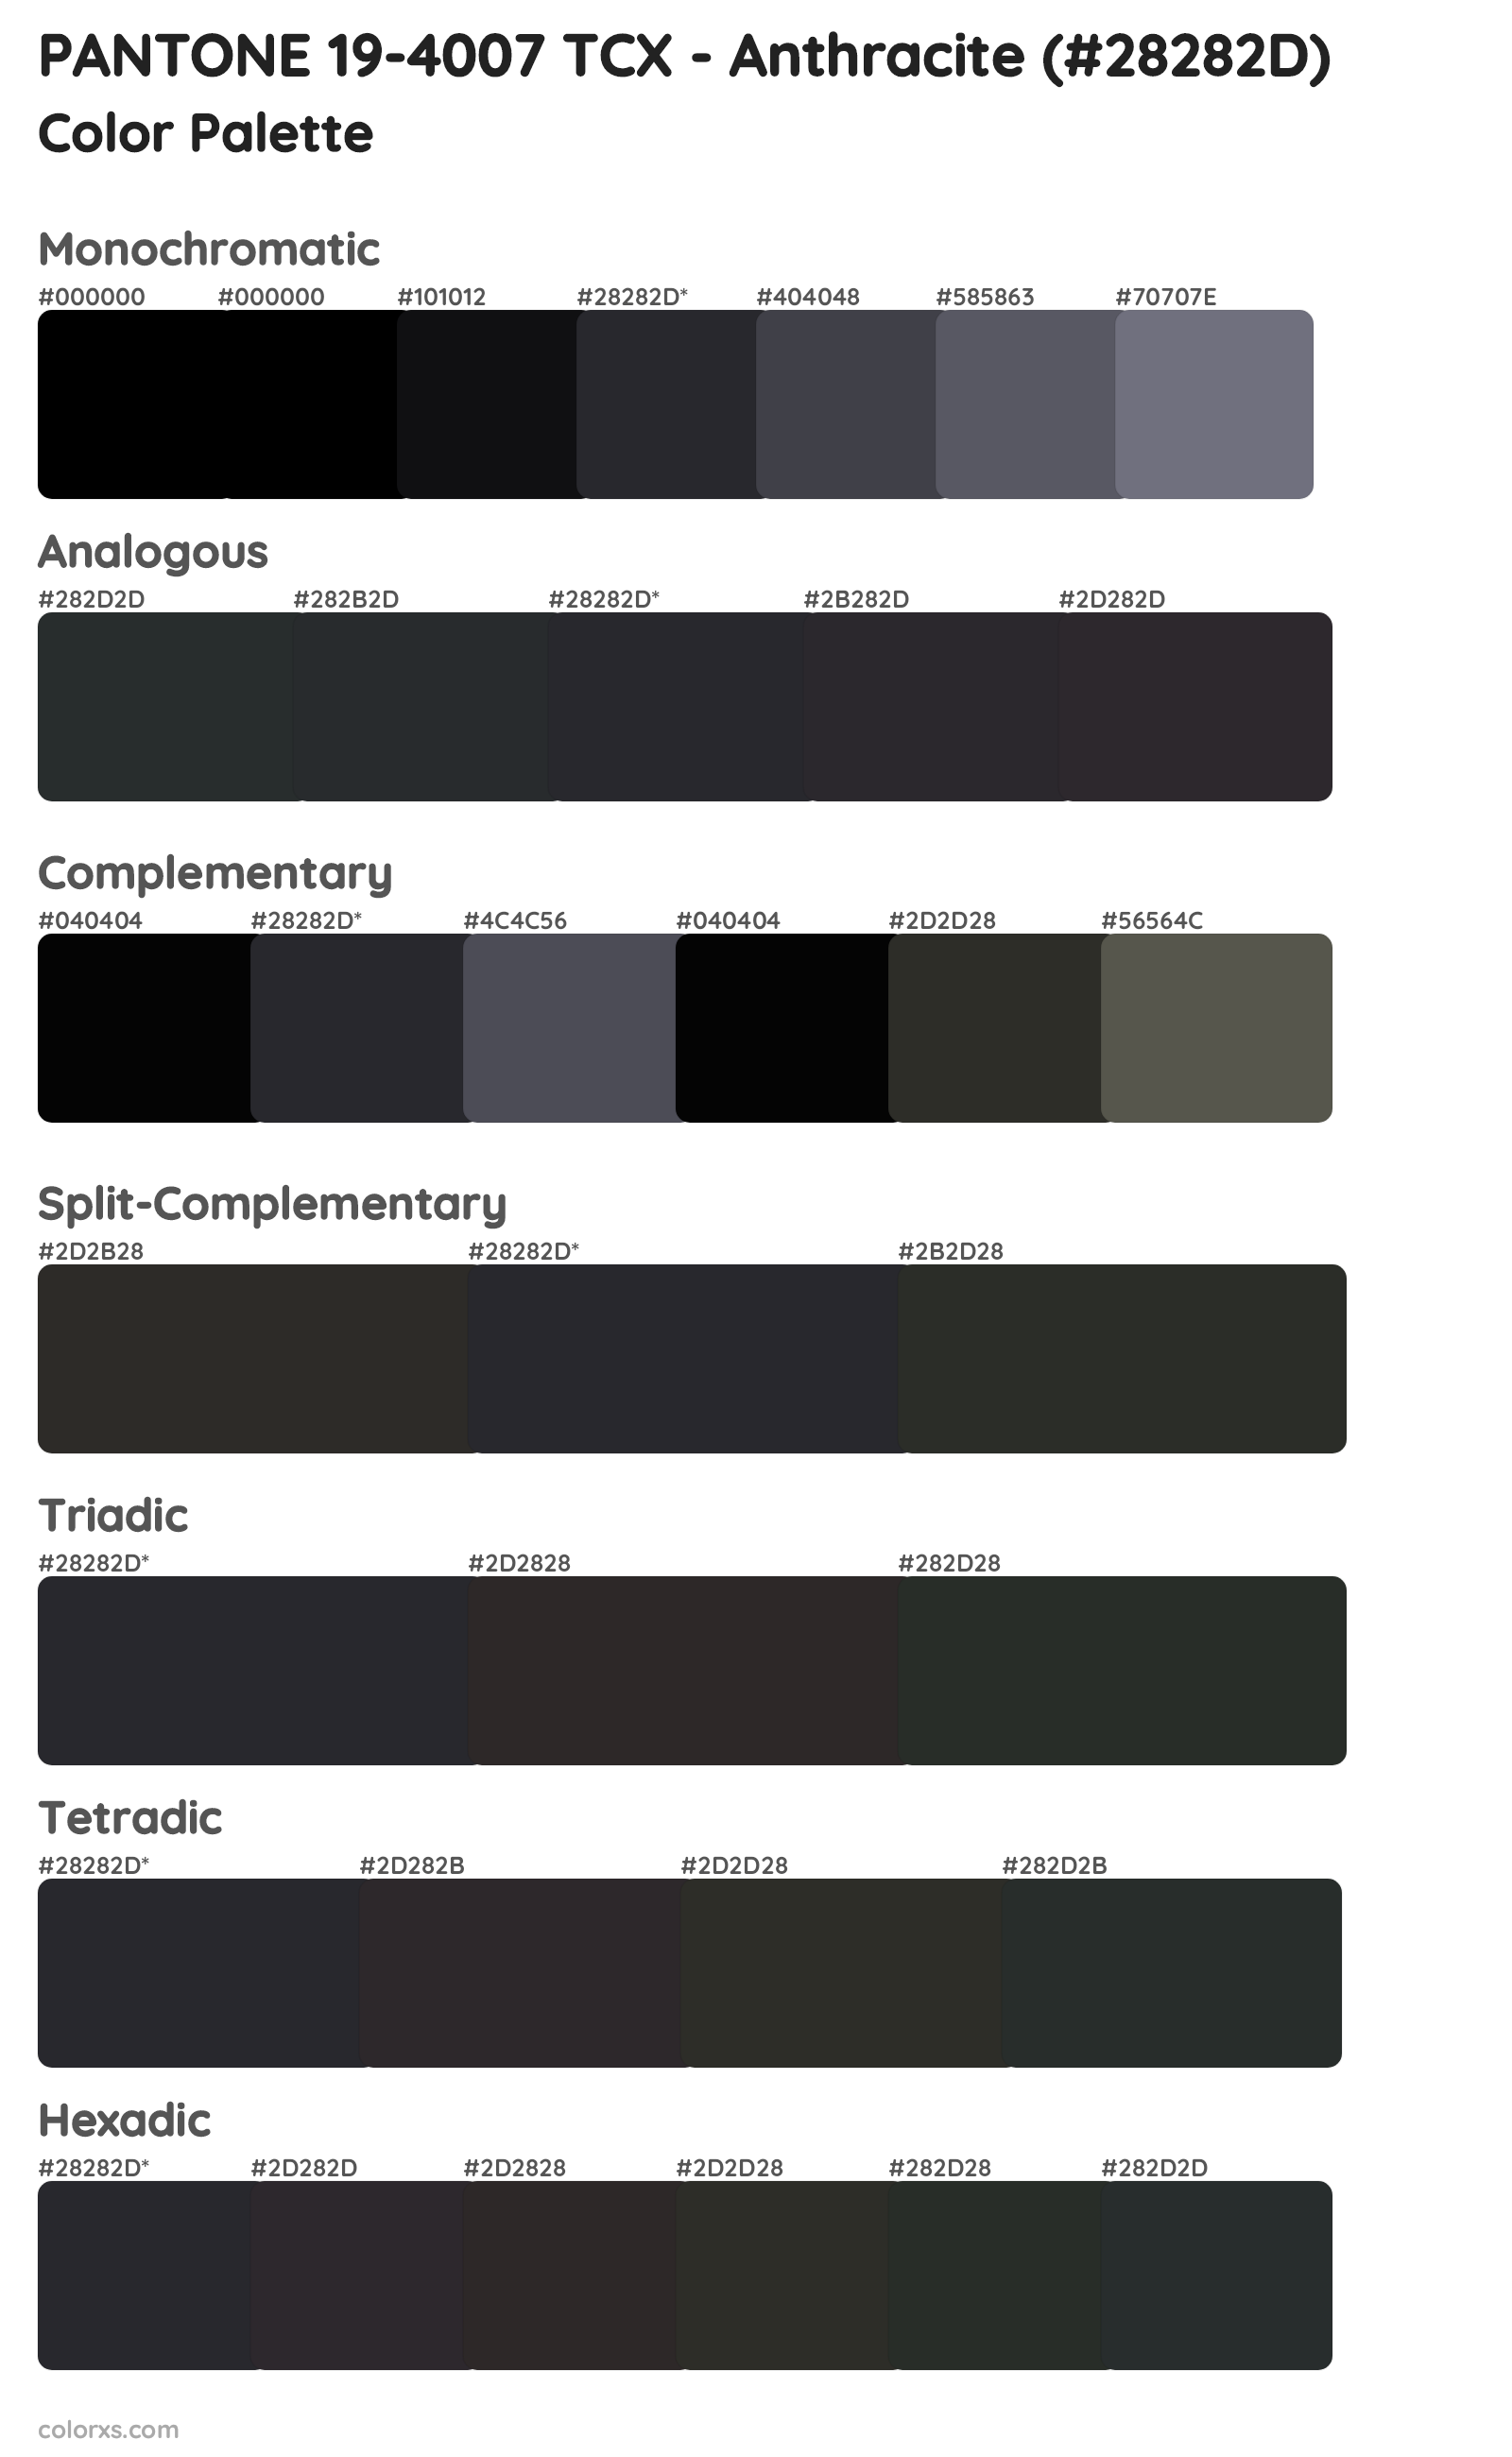 PANTONE 19-4007 TCX - Anthracite Color Scheme Palettes